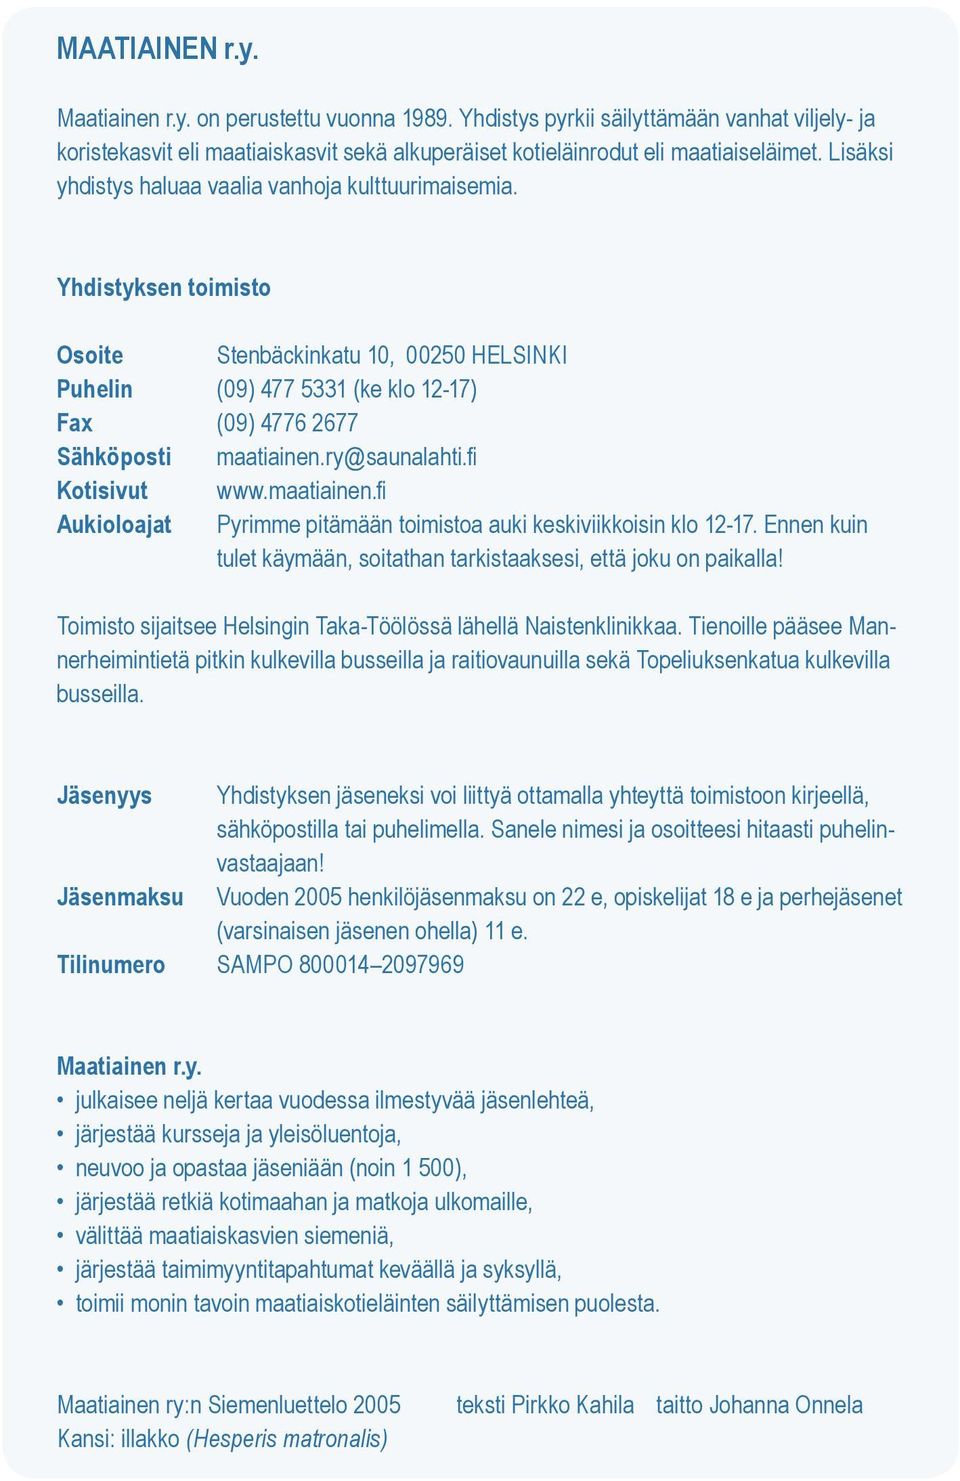 ry@saunalahti.fi Kotisivut www.maatiainen.fi Aukioloajat Pyrimme pitämään toimistoa auki keskiviikkoisin klo 12-17. Ennen kuin tulet käymään, soitathan tarkistaaksesi, että joku on paikalla!